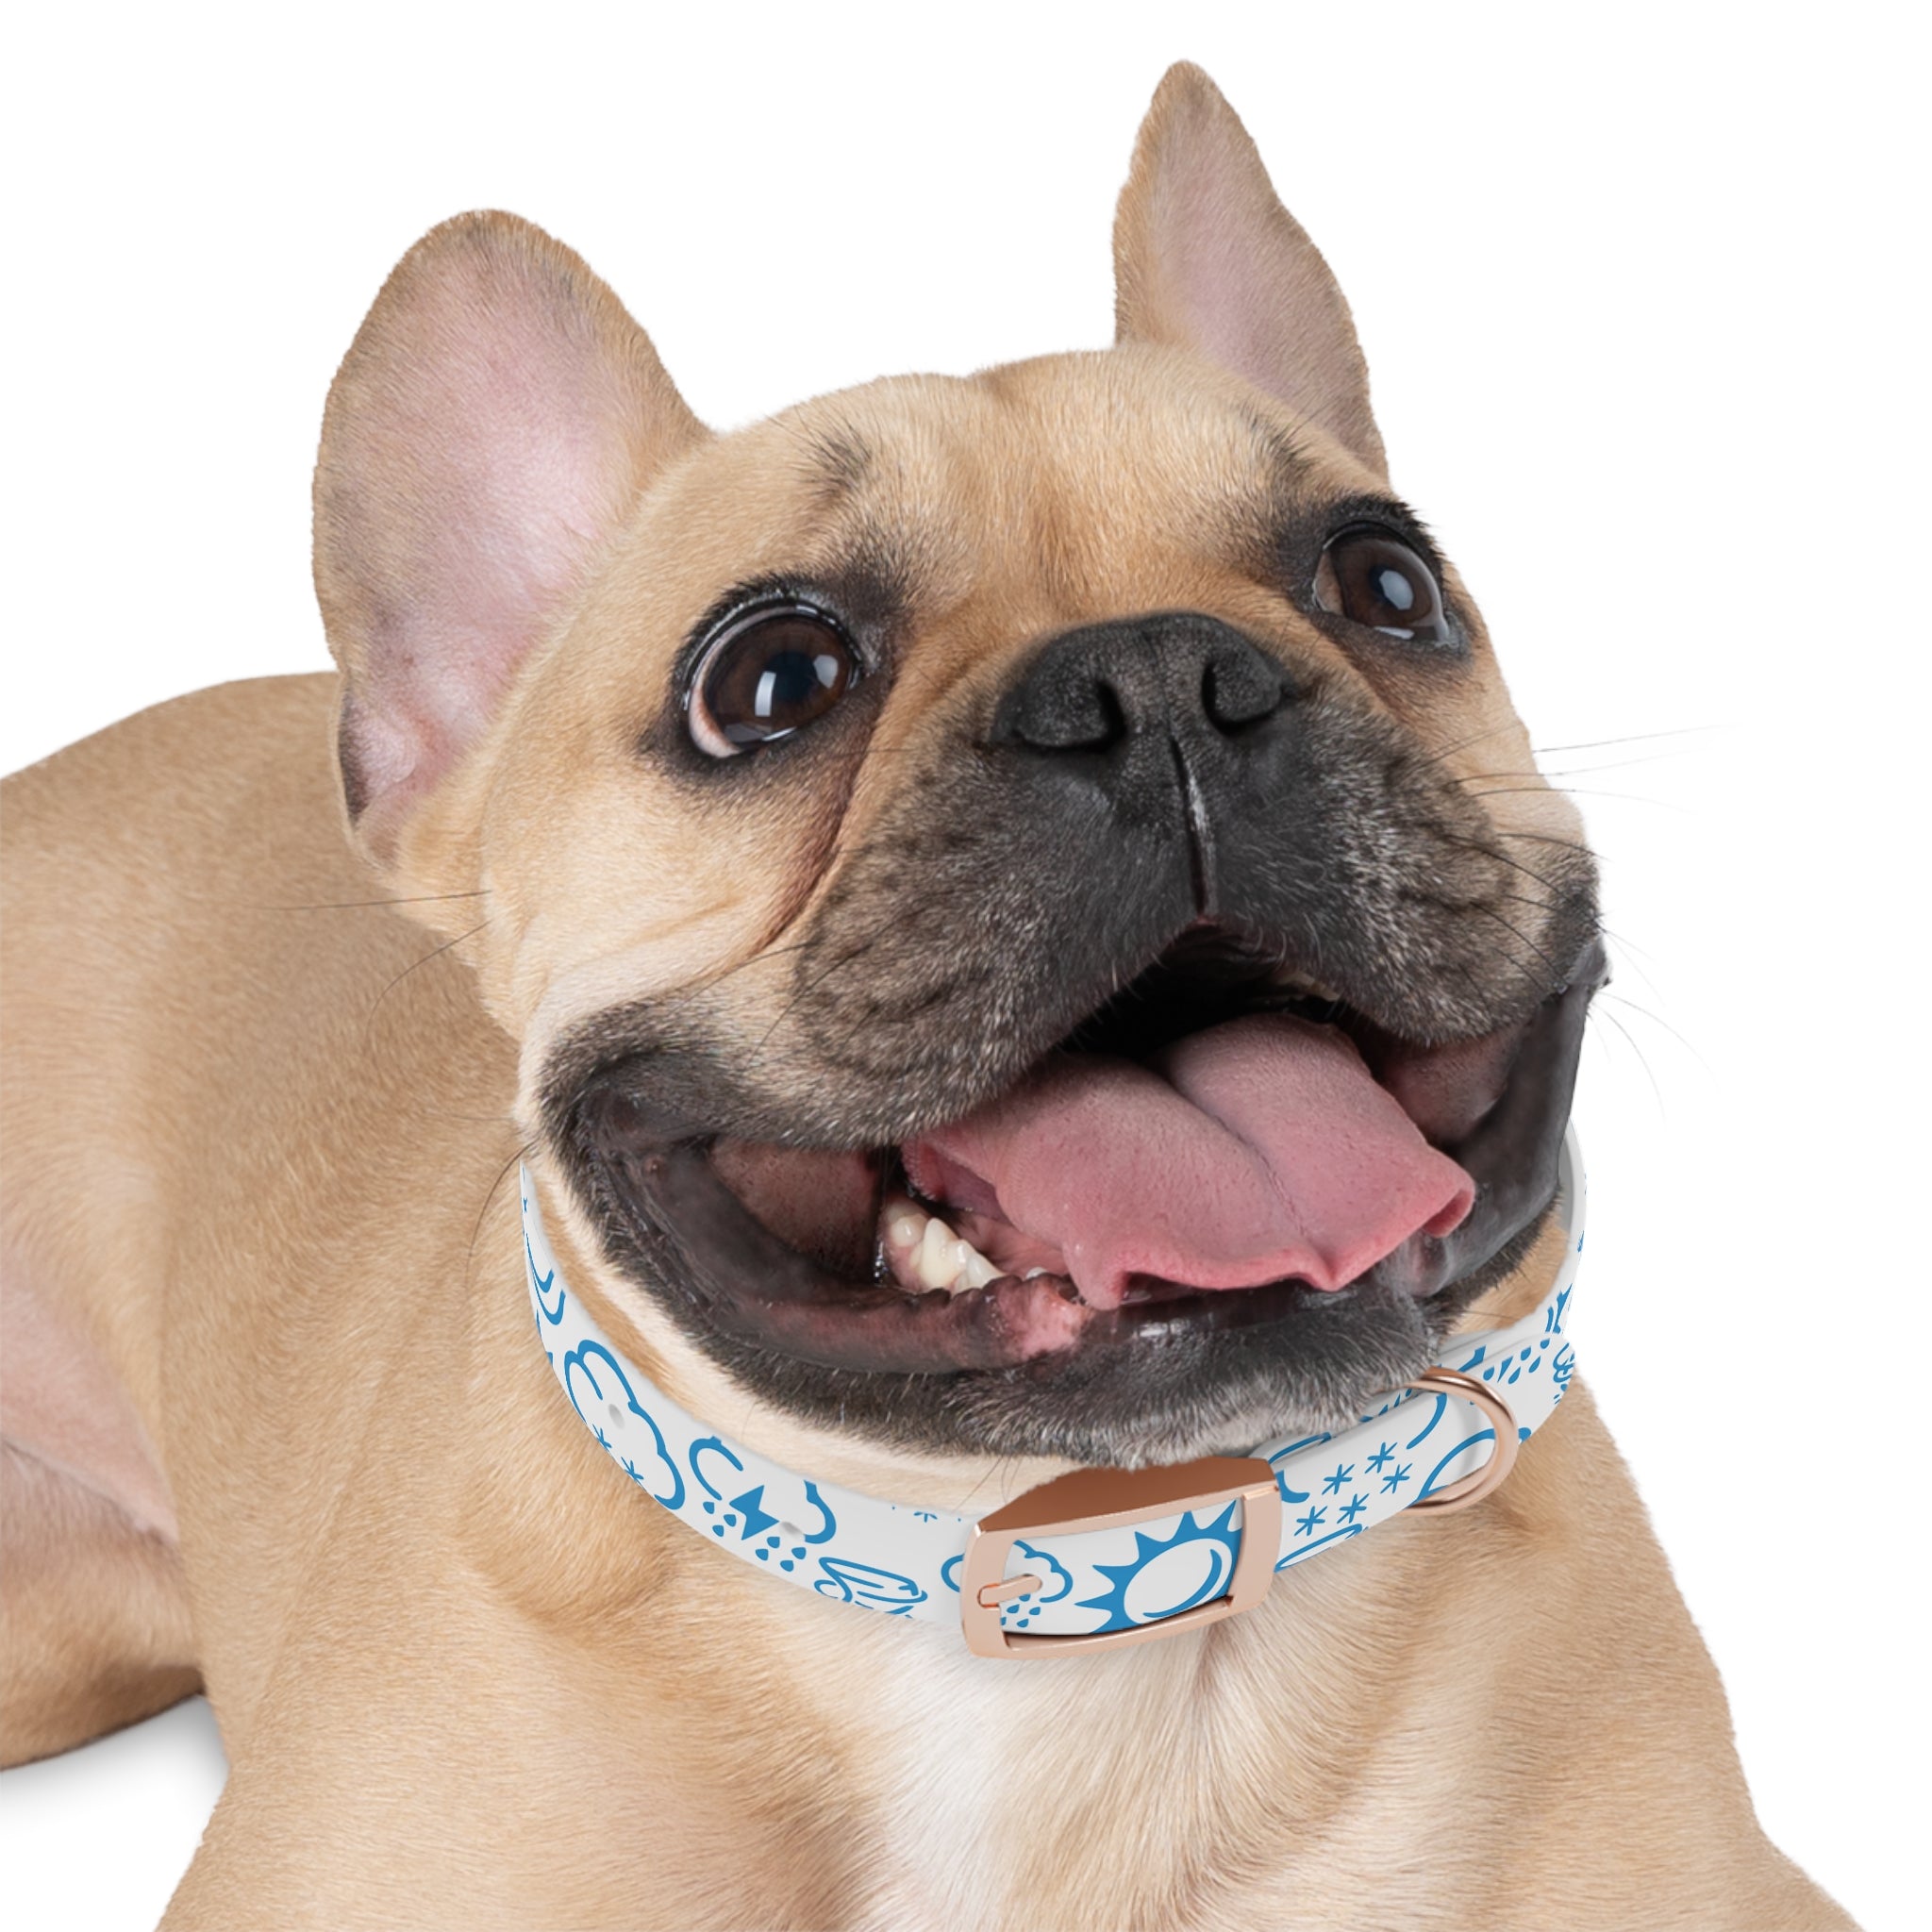 Wx Icon (White/Blue) Dog Collar 